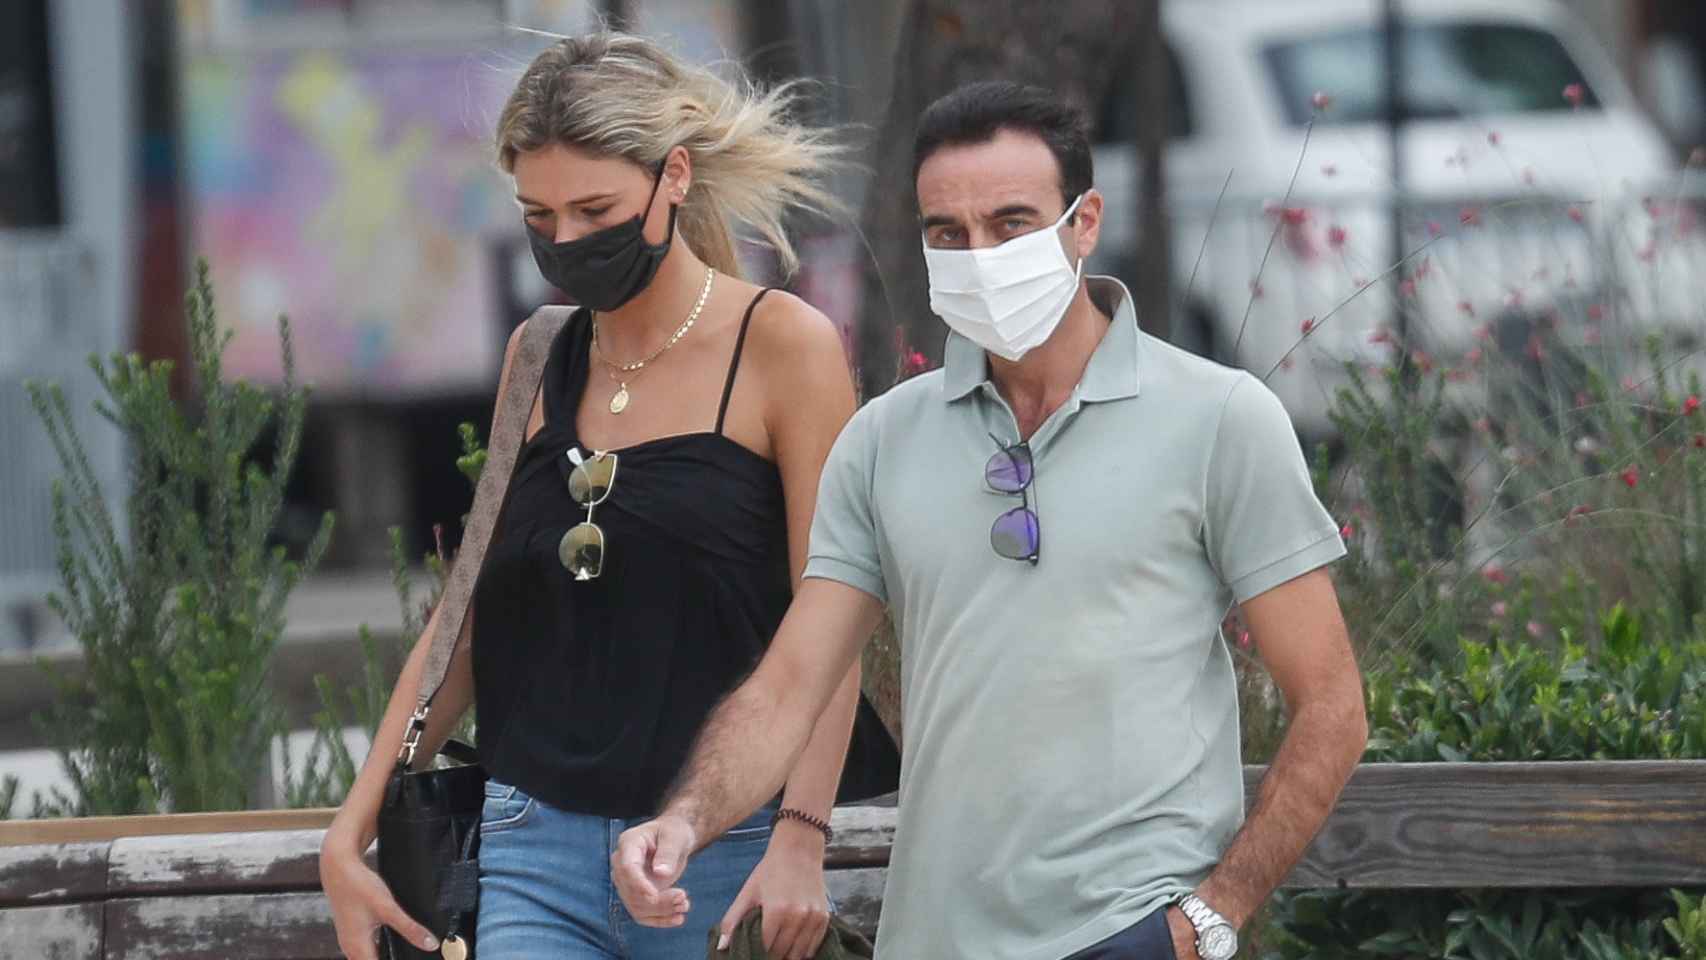 Ana Soria y Enrique Ponce paseando su amor por las calles de Nimes, Francia, en septiembre de 2020.